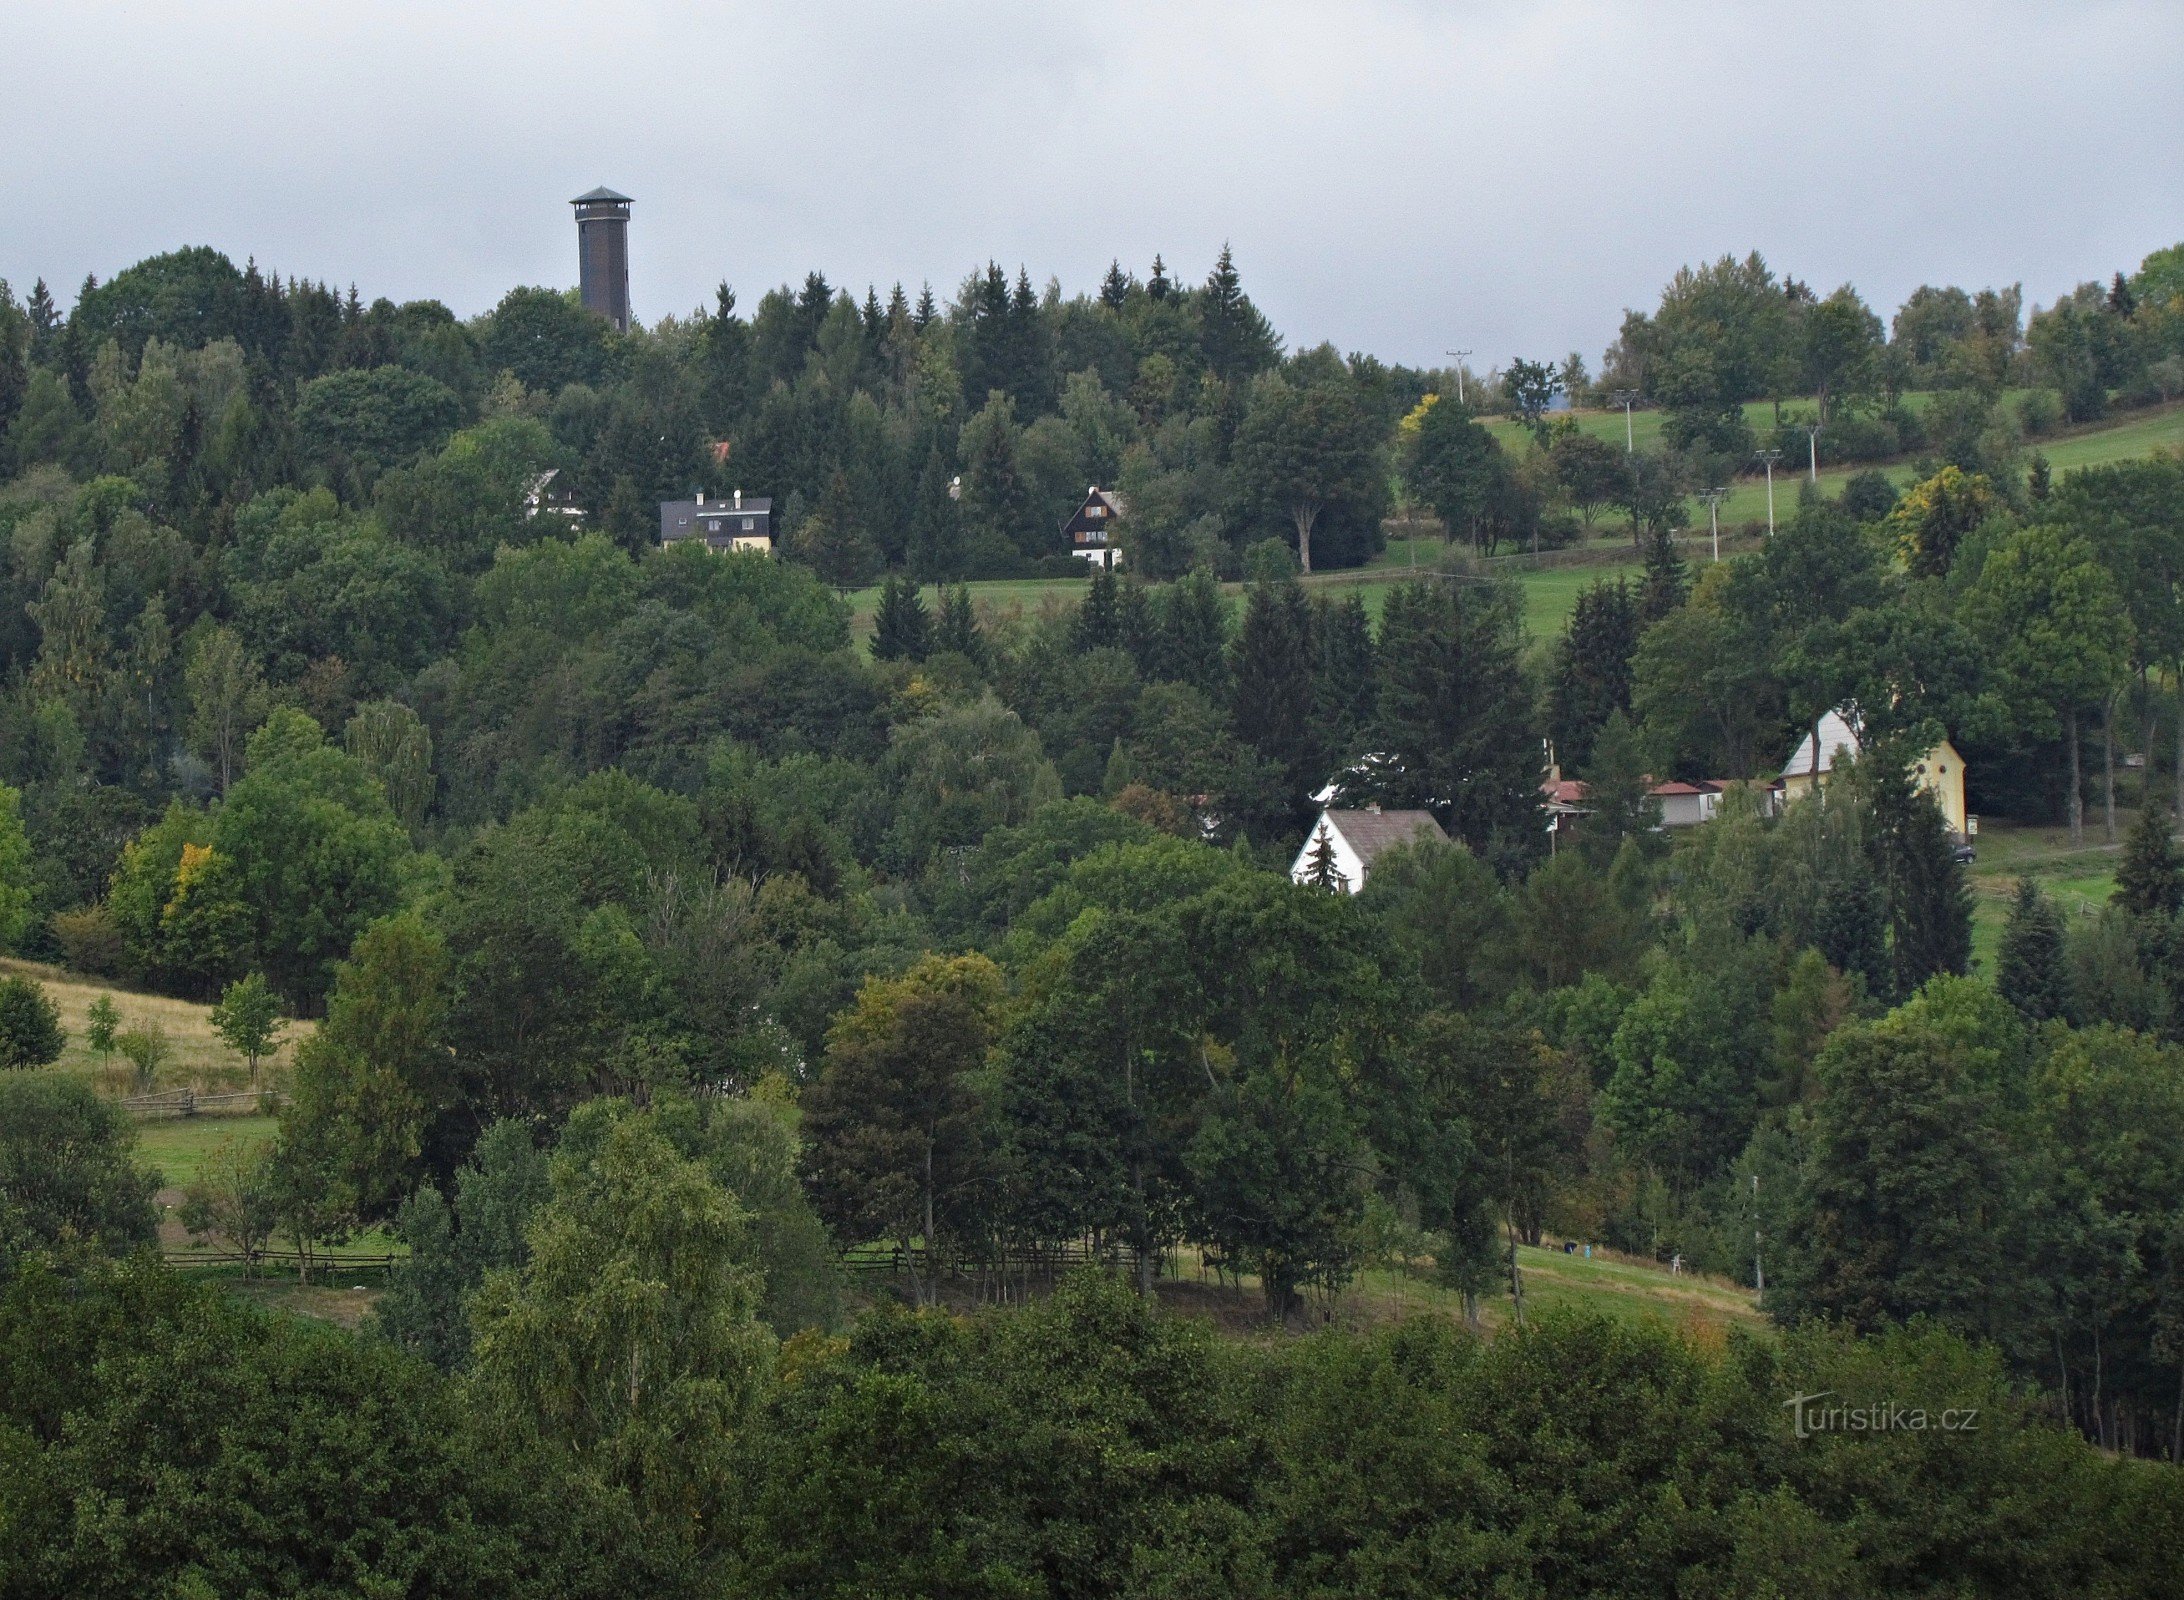 Nová Ves - area of ​​the Na Vyhlídke lookout tower and cottage